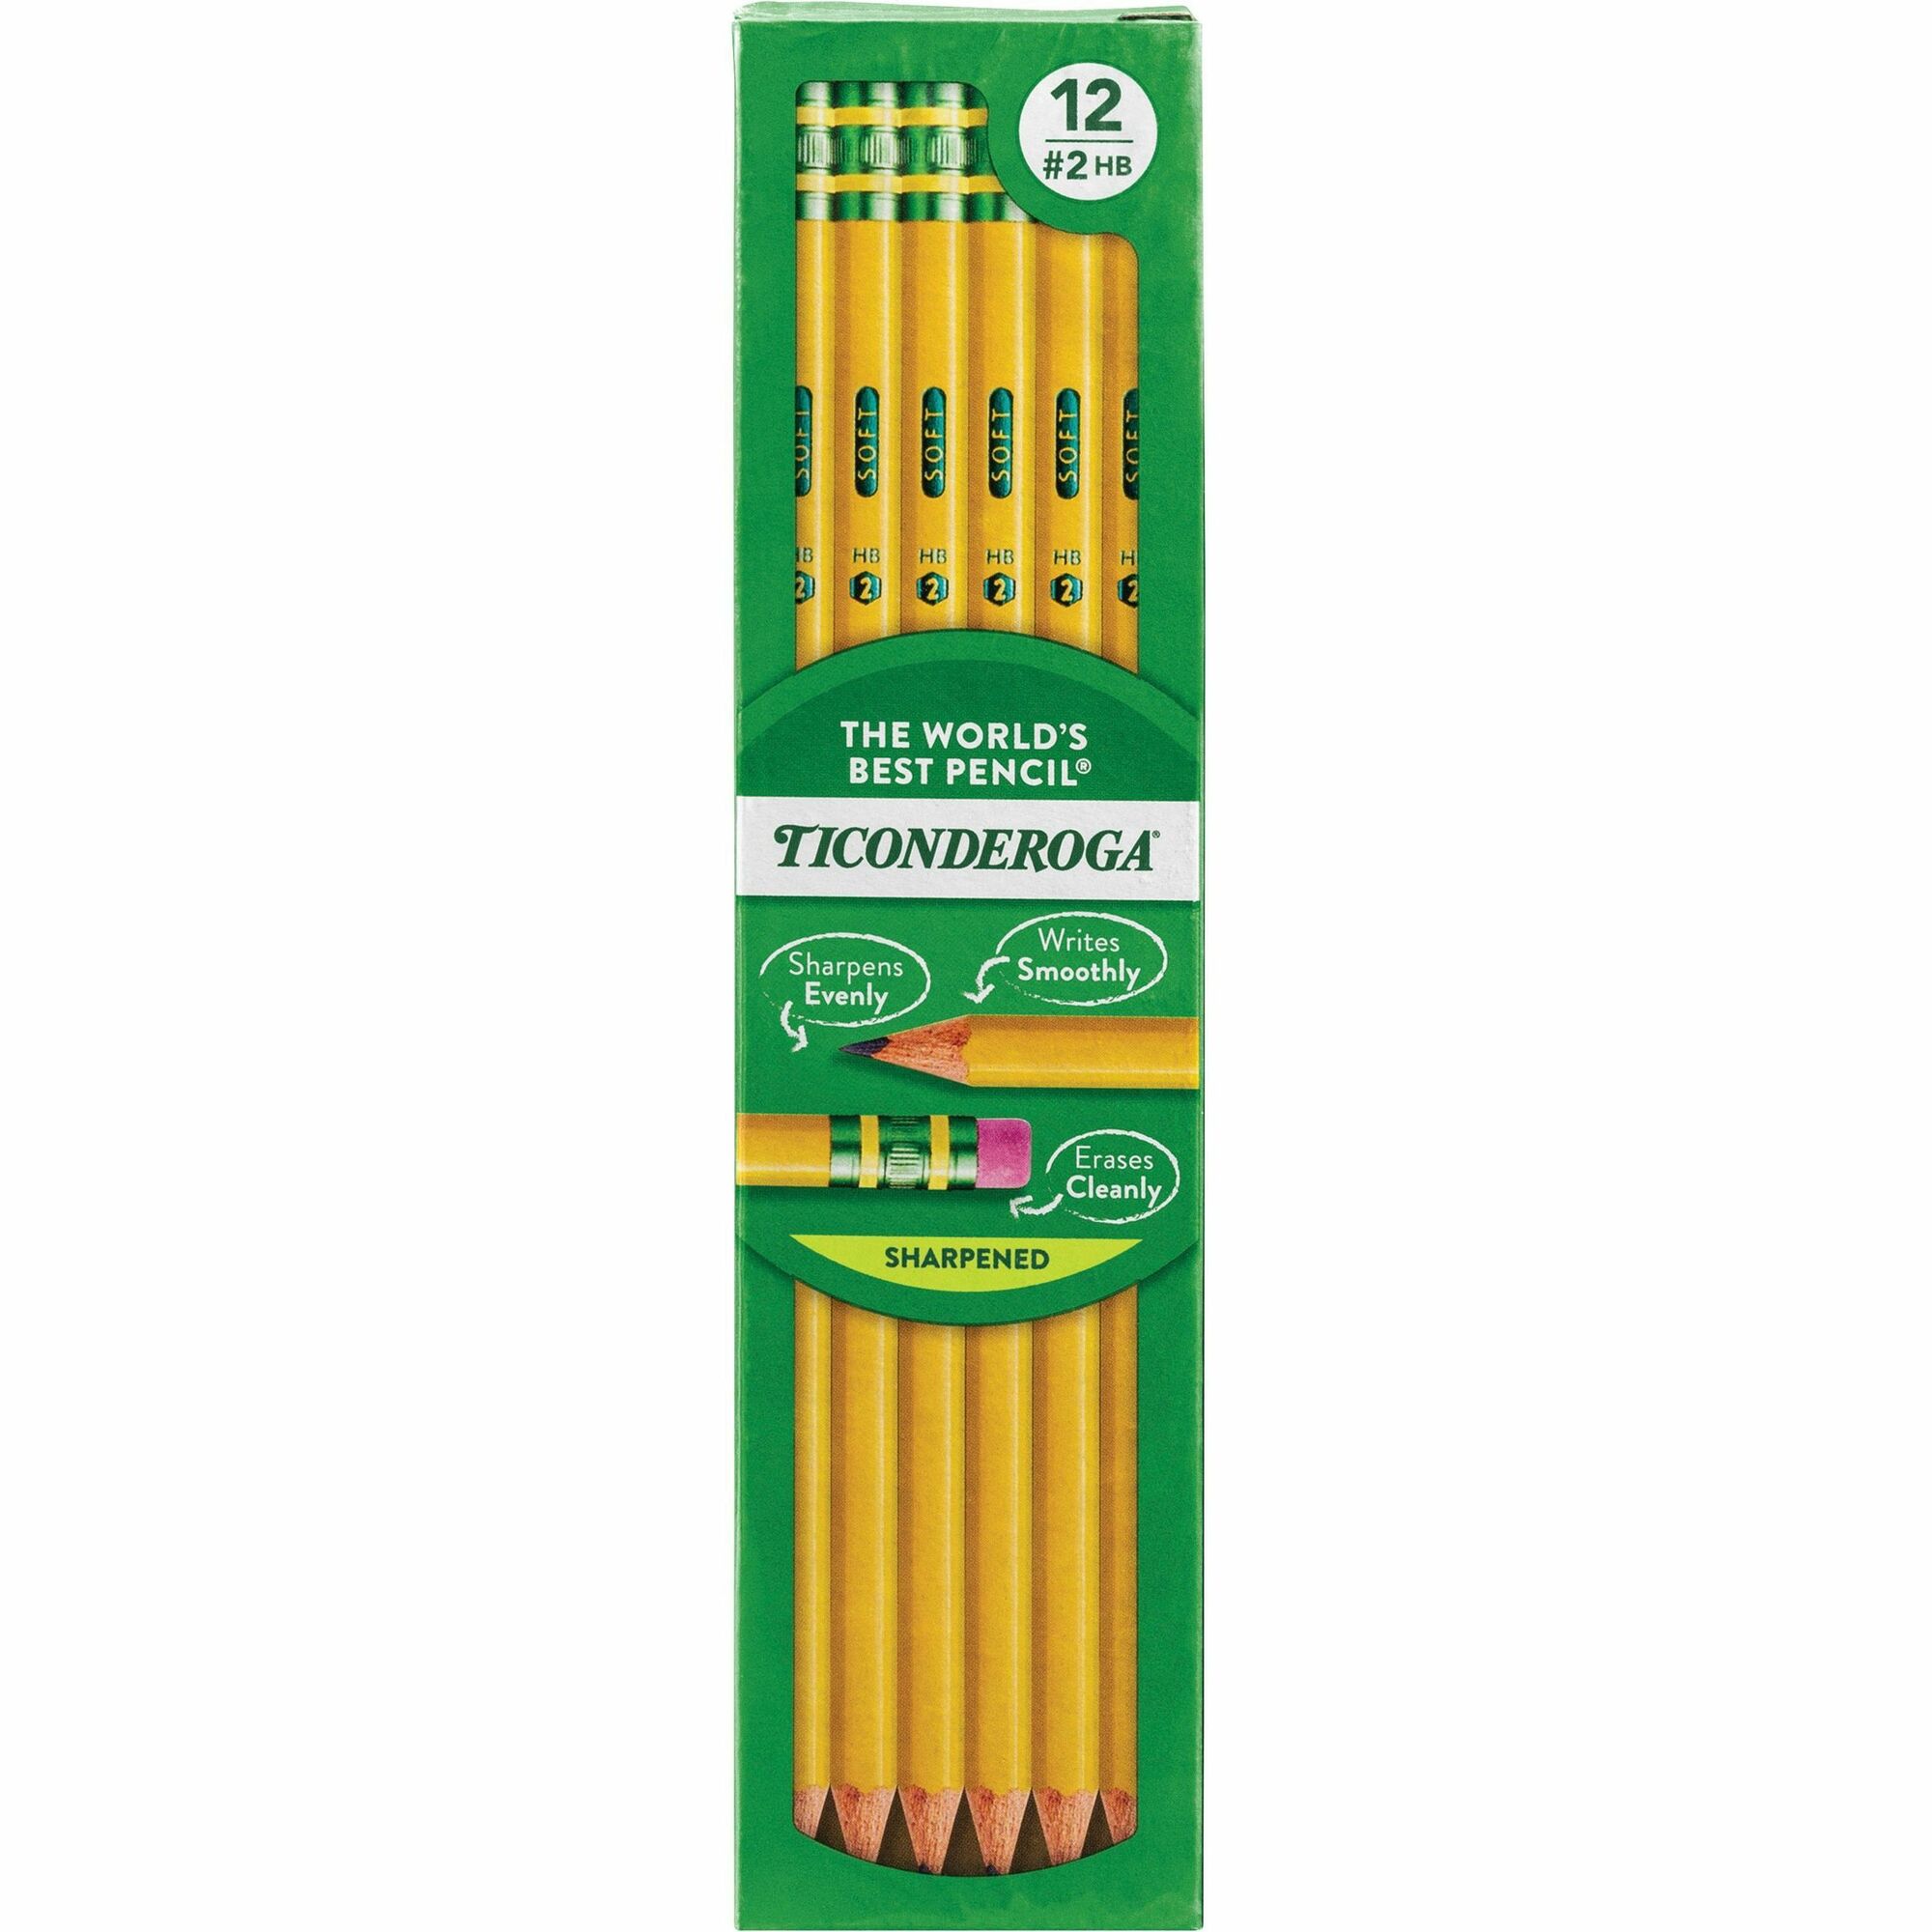 Ticonderoga　Presharpened　Metro　Supplies　No.　Pencils　Pencils　Dixon　#2　Ticonderoga　Lead　Yellow　Cedar　Barrel　Dozen　Company